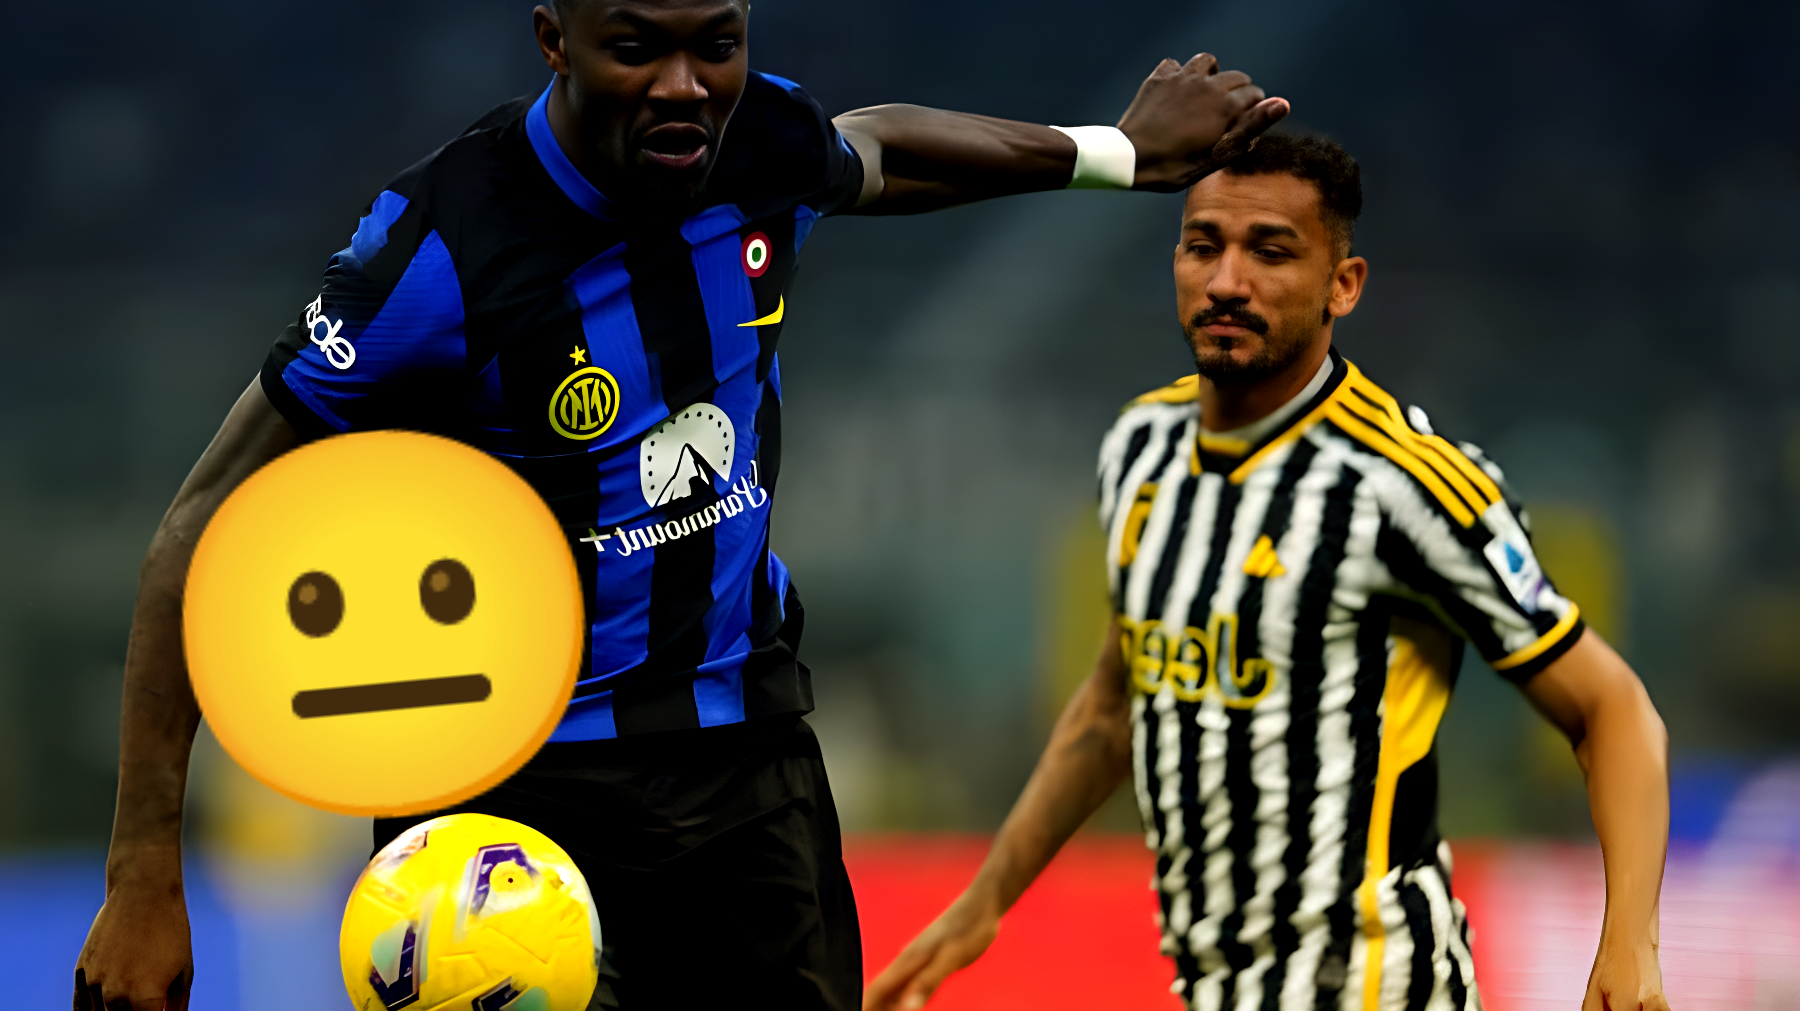 Colpo di scena: la Juve ruba un giocatore all'Inter con un trasferimento stupefacente